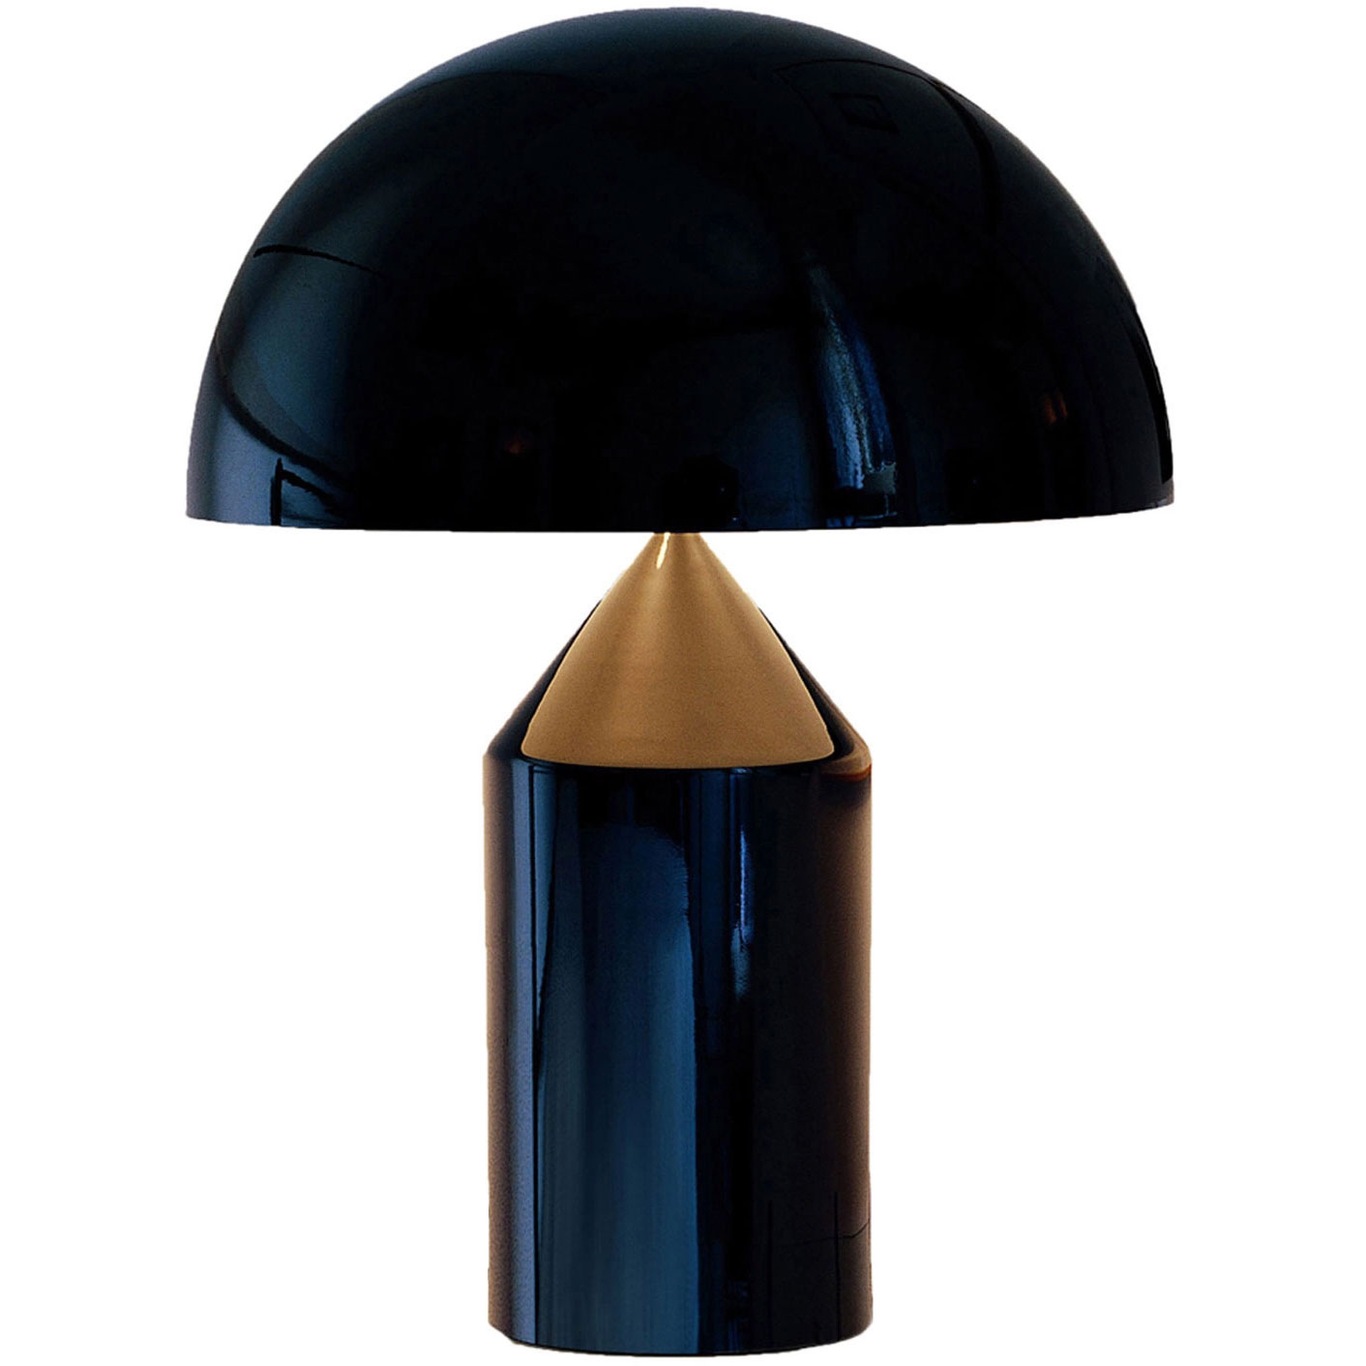 Atollo 233 Table Lamp 70 cm, Black